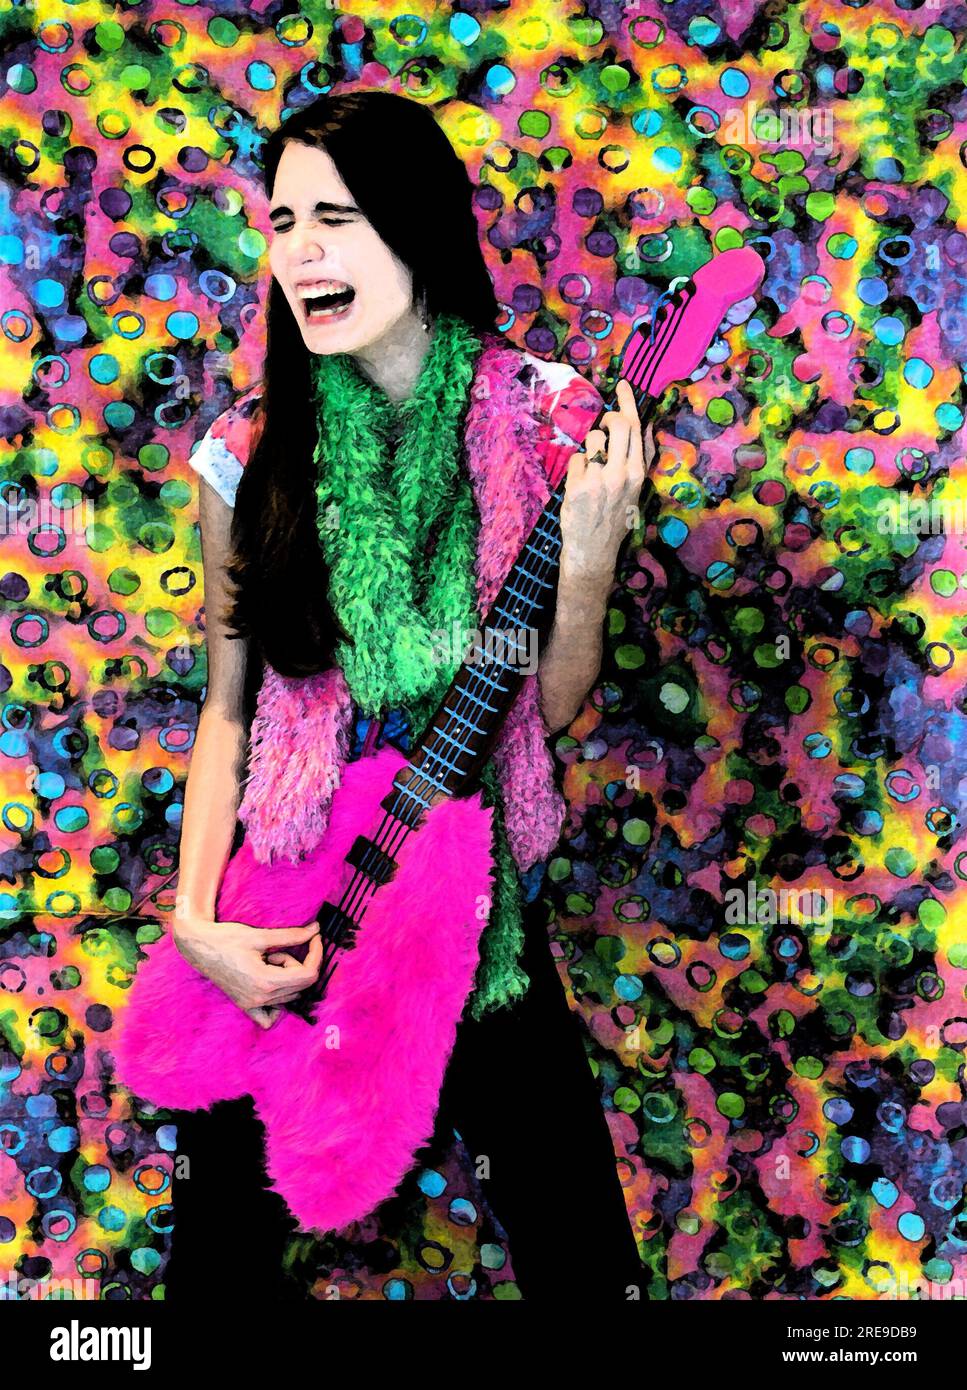 Abbildung eines lachenden Teenagers, der vorgibt, auf einer ausgestopften, flauschigen Basisgitarre zu stolzieren. Ein tye-farbiger Hintergrund sorgt für lebendige Farben und Stockfoto